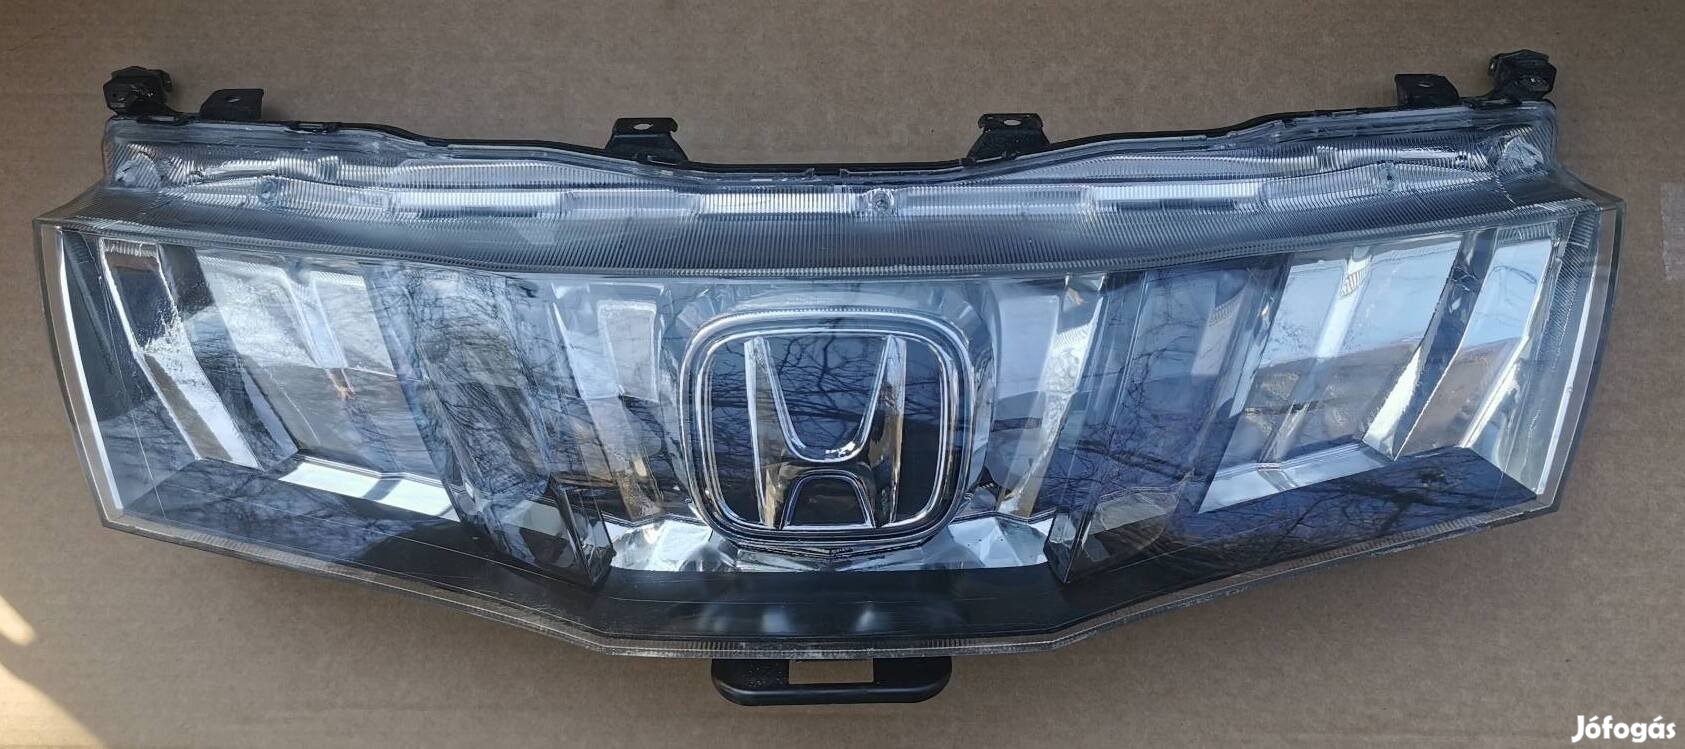 Honda ufo civic díszrács plexi 2006-2012 